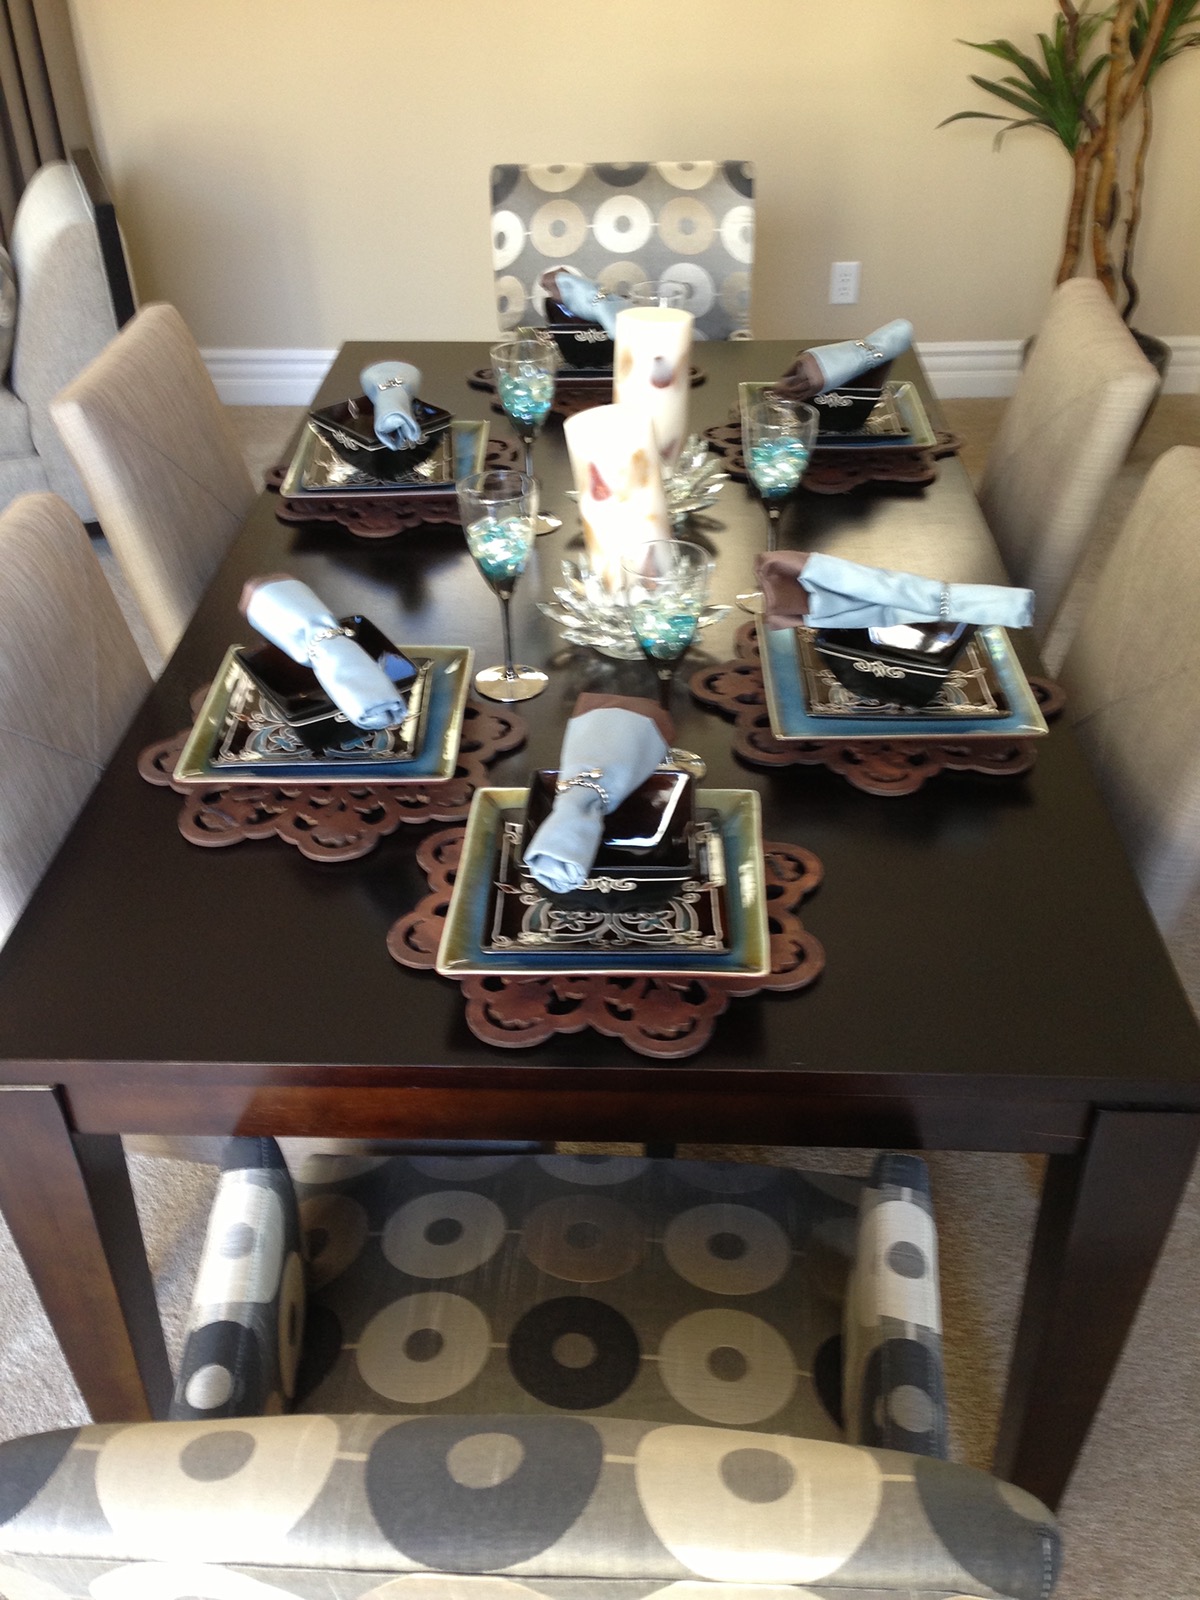 interior designer dining room design design ideas FORMAL DINING ROOM Formal Dining Design interior decorator